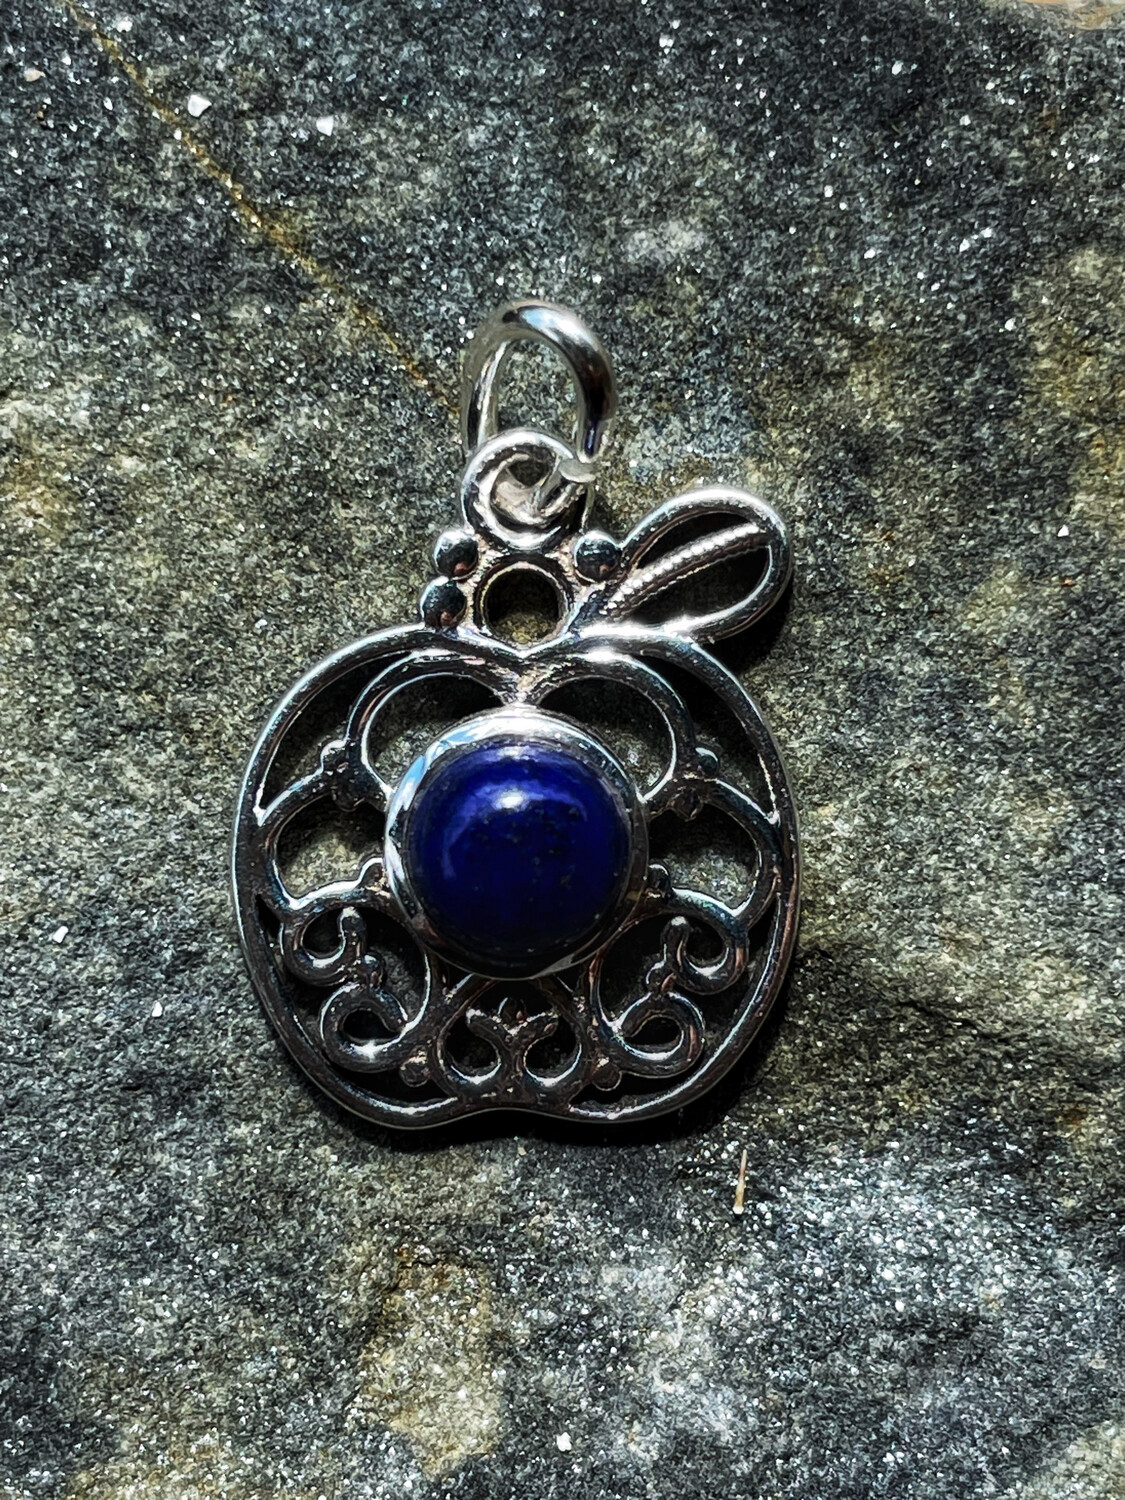 Série « spéciale Orcades » pendentif en argent informé sur le site du ring of brodgar cercle de guérison avec lapis lazuli no 62